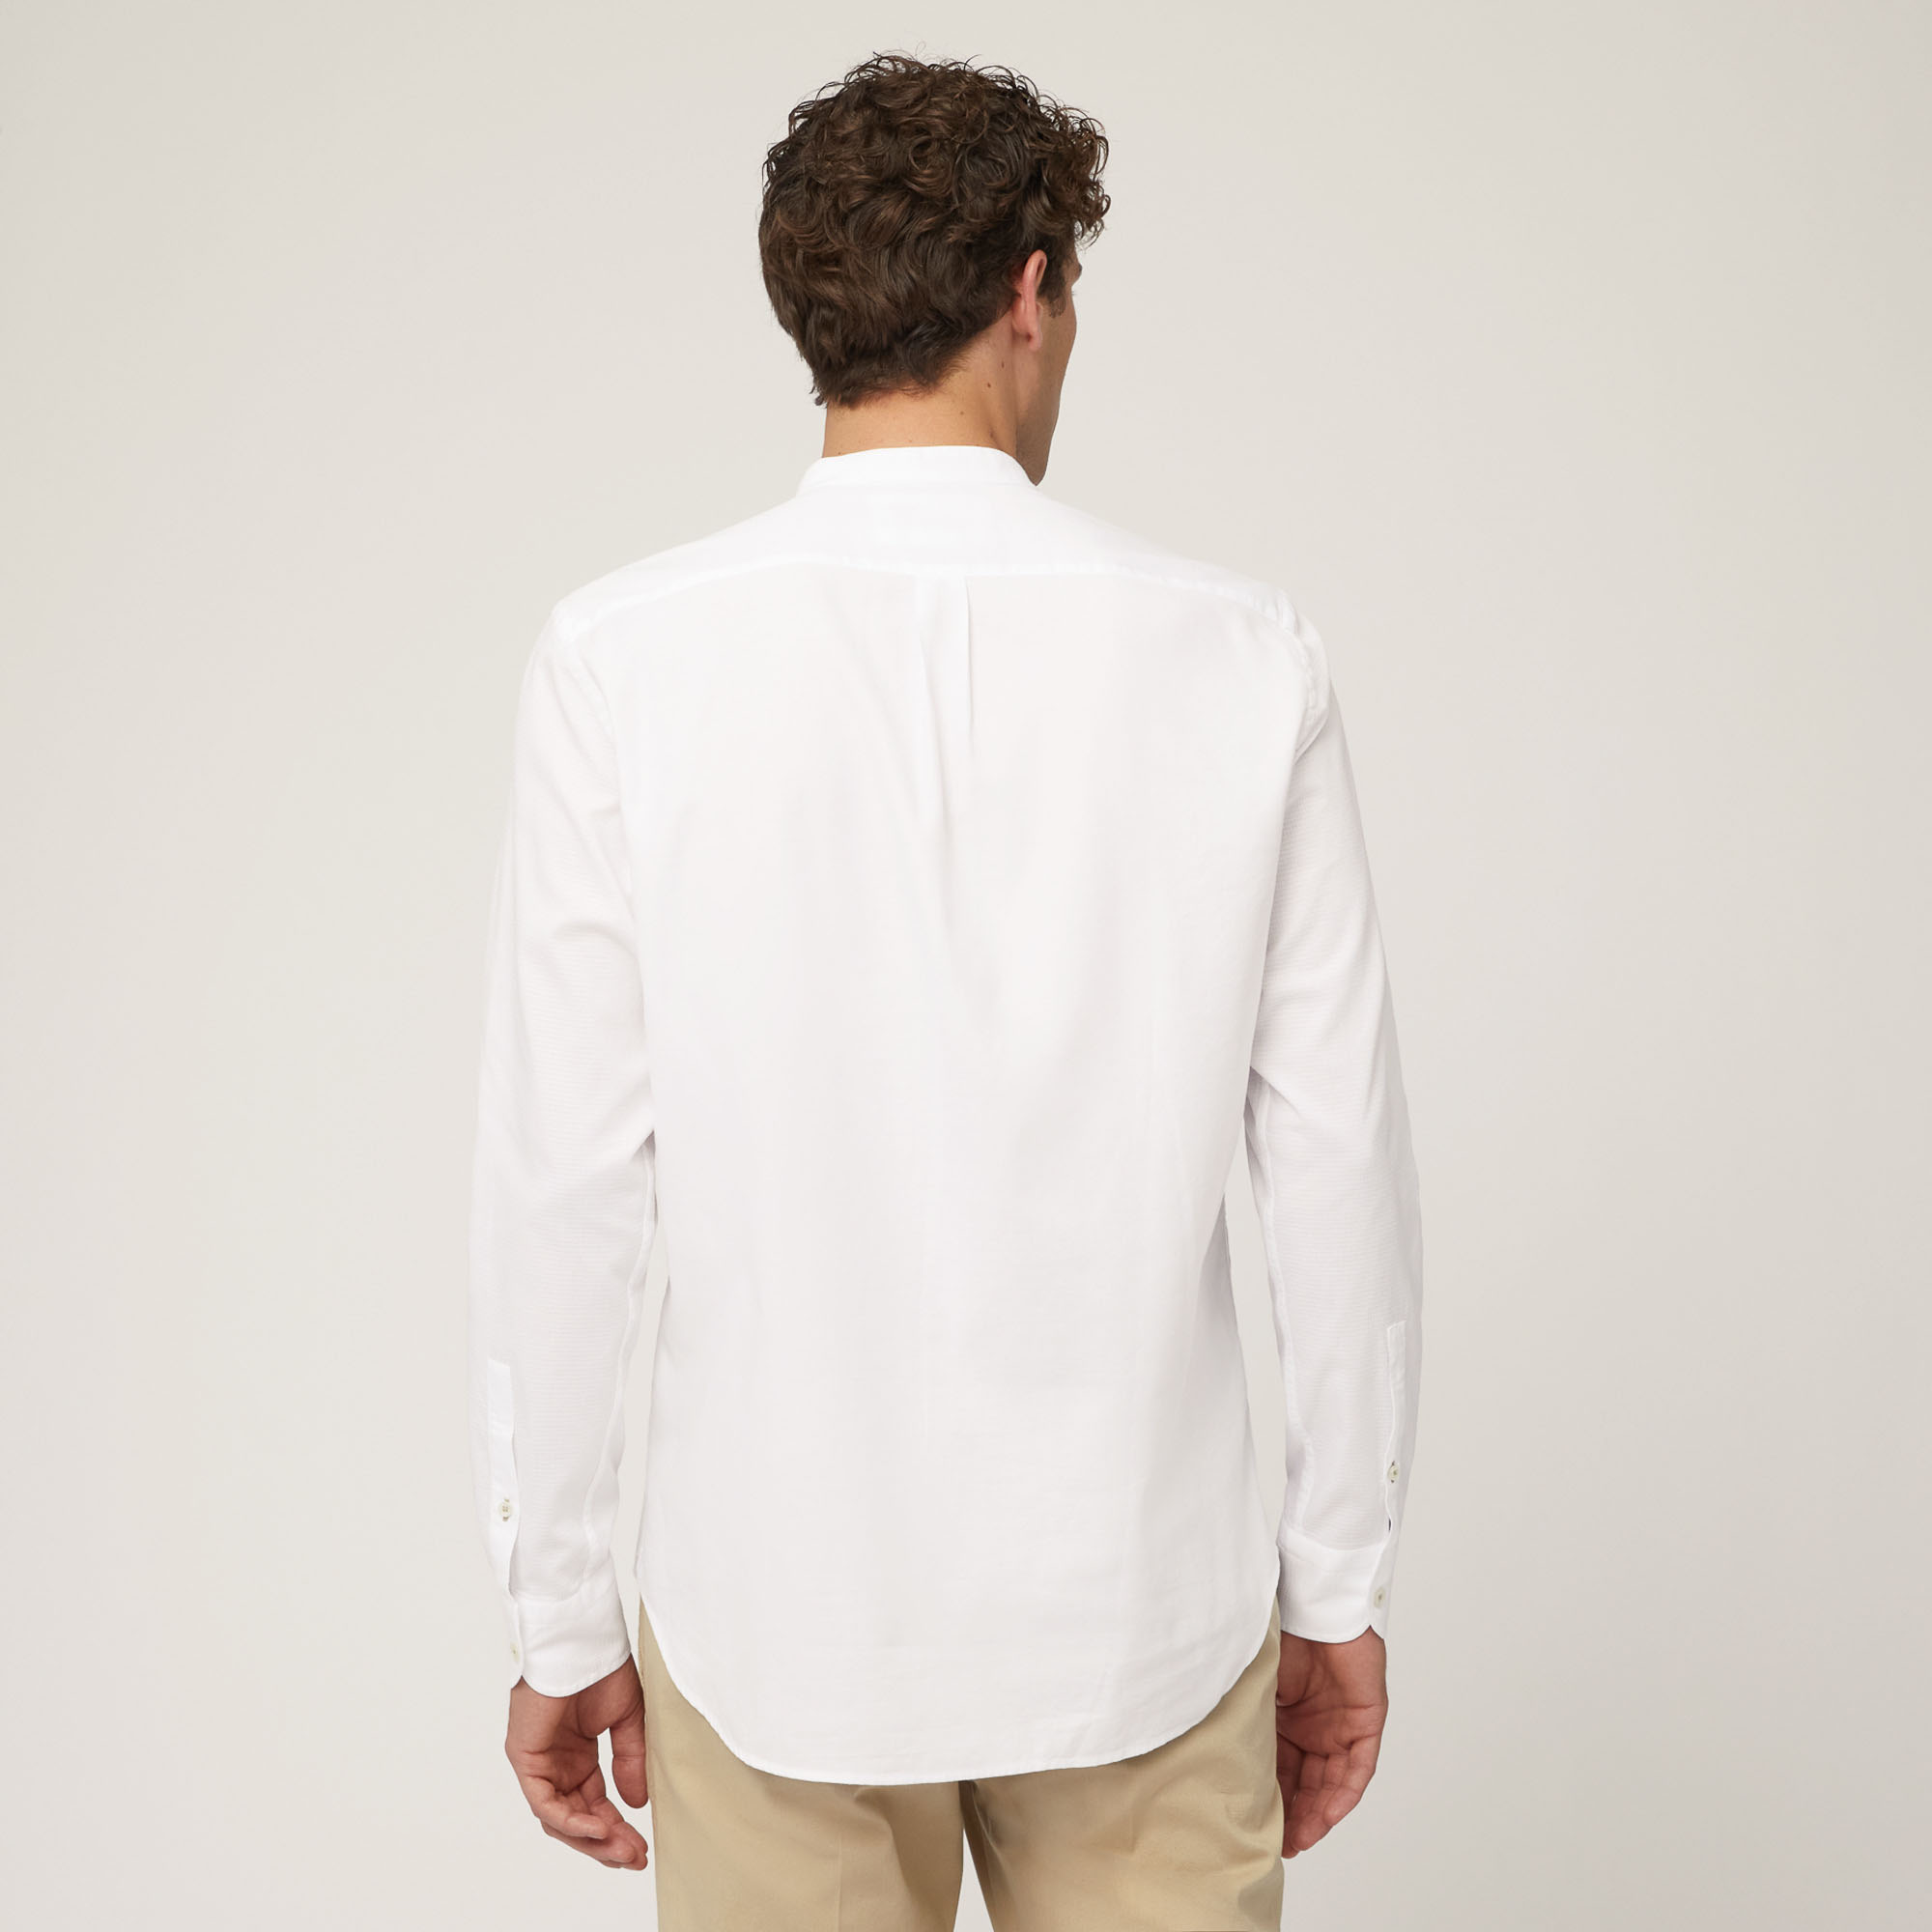 Hemd aus Baumwollkettengewirk mit Stehkragen und Brusttasche, Weiß, large image number 1